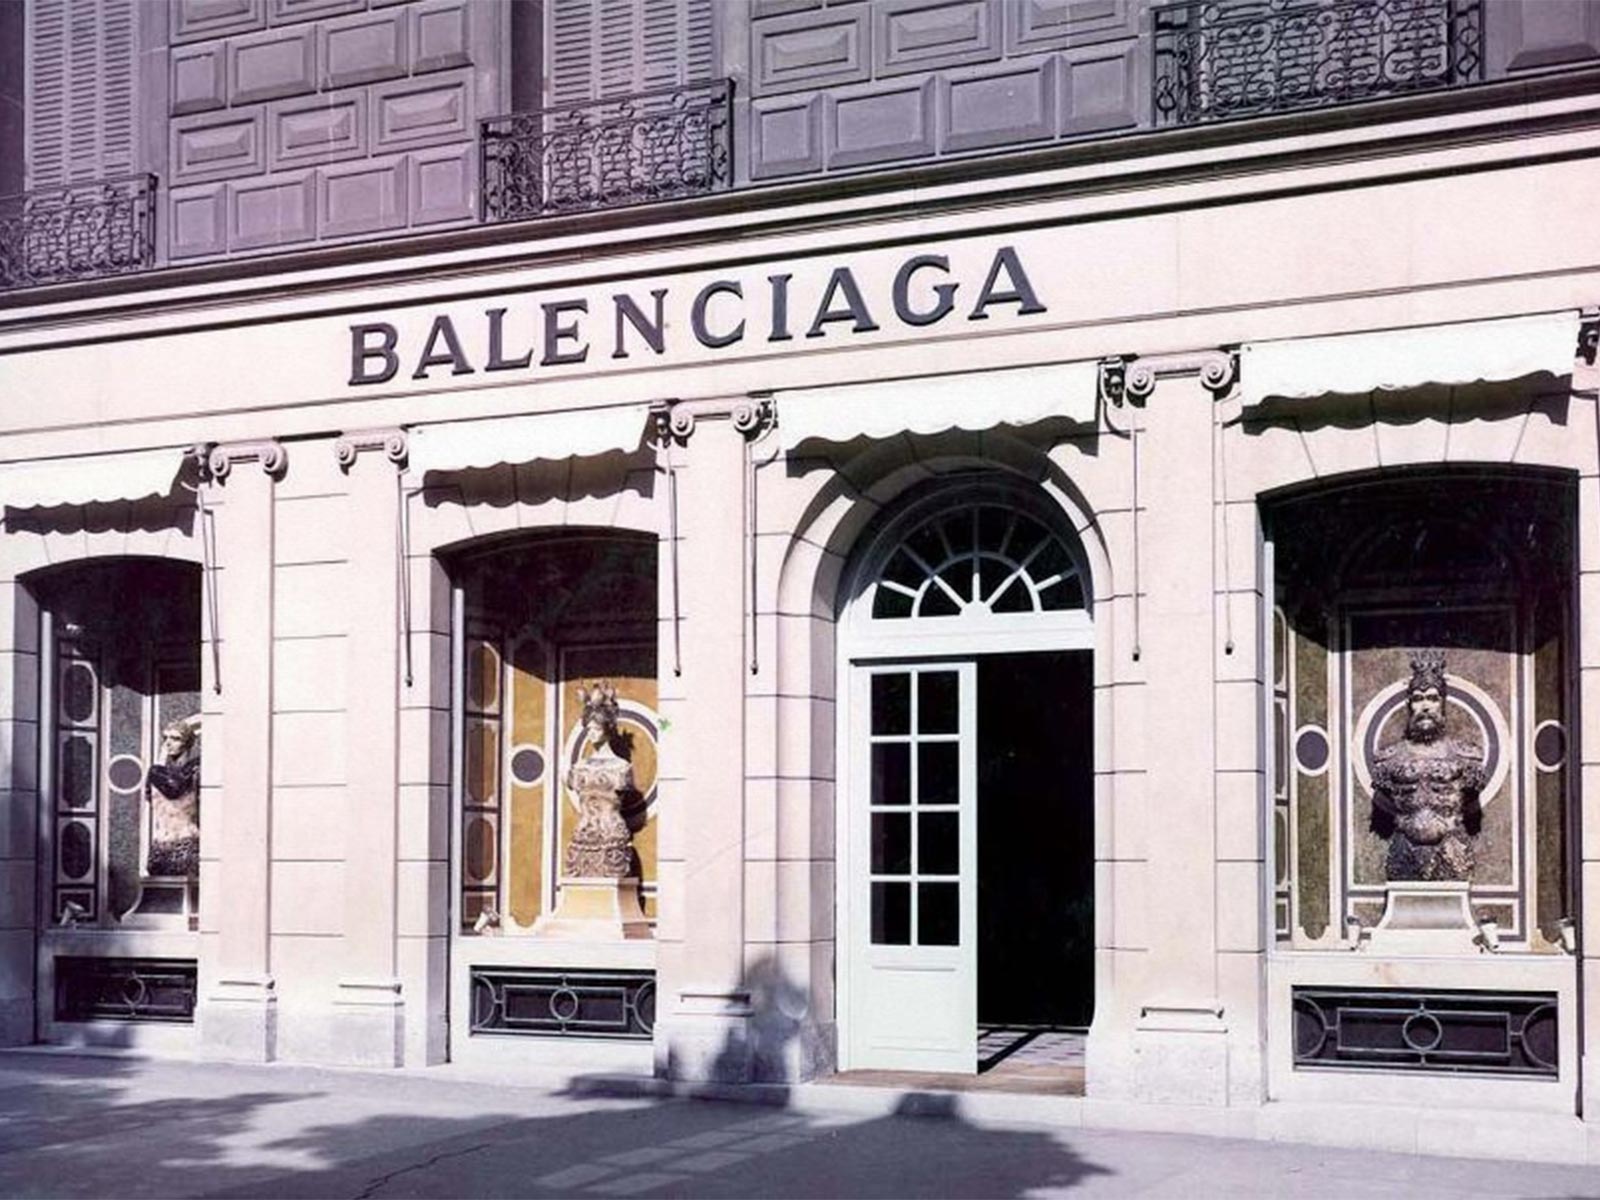 Balenciaga fashion boutique display window Hong Kong  stock photo 2239325   Crushpixel